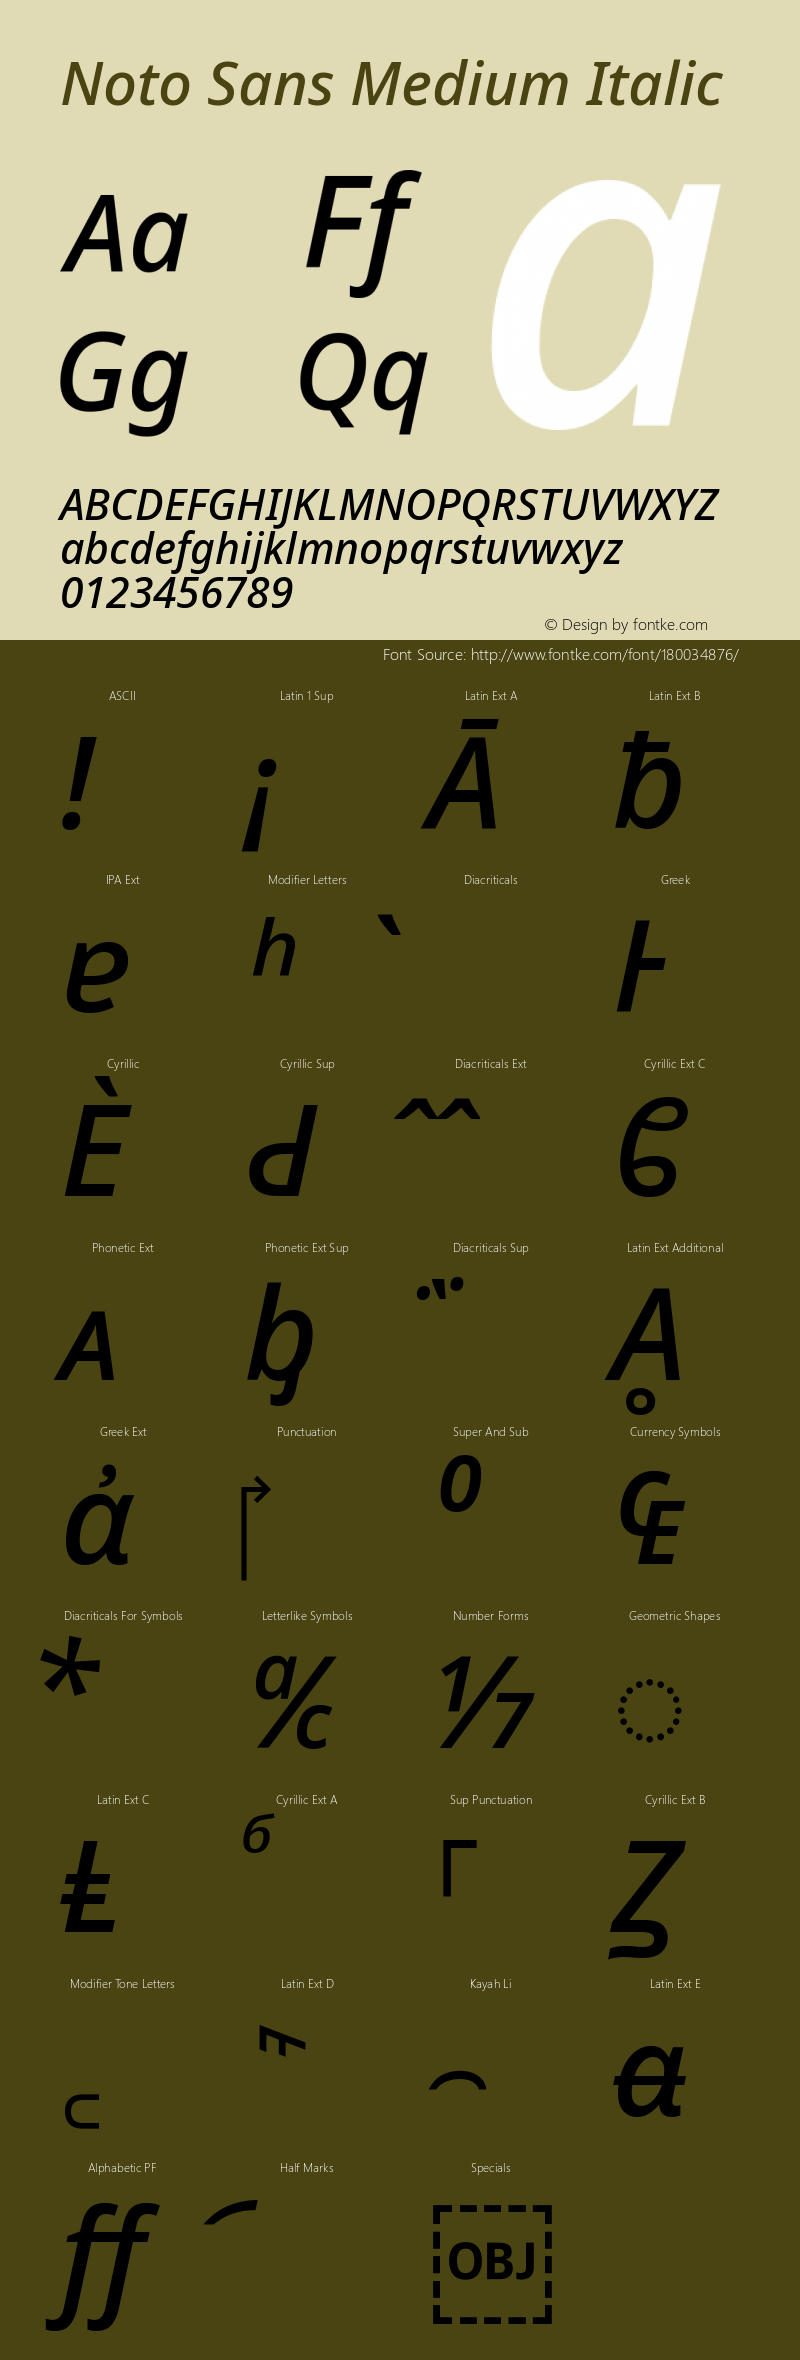 Noto Sans Medium Italic Version 2.003图片样张